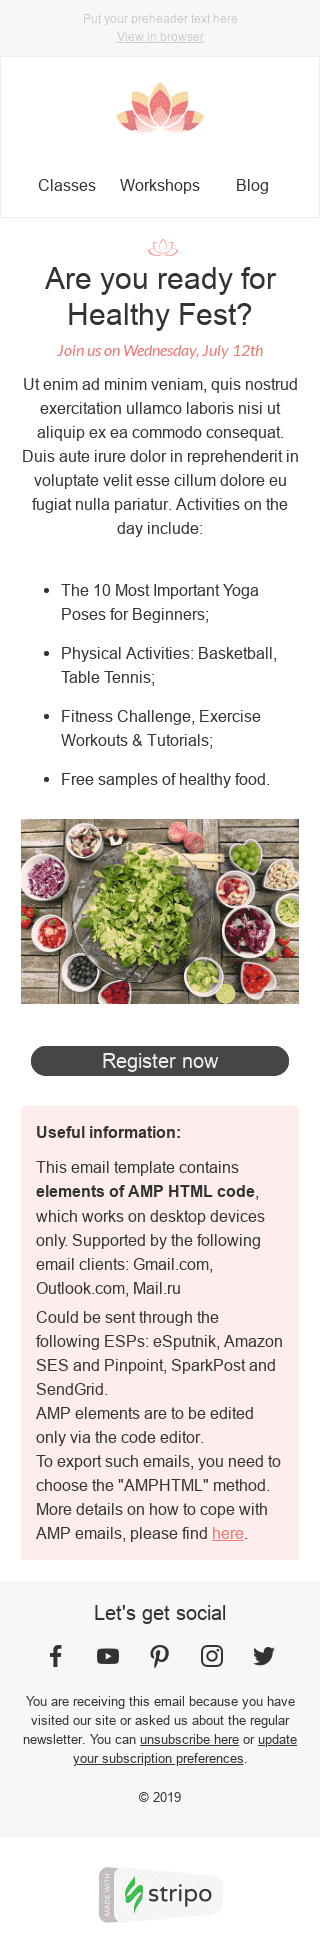 Modelo de E-mail de «Fest Saudável» de Convite para a indústria de Alimentação Visualização de dispositivo móvel